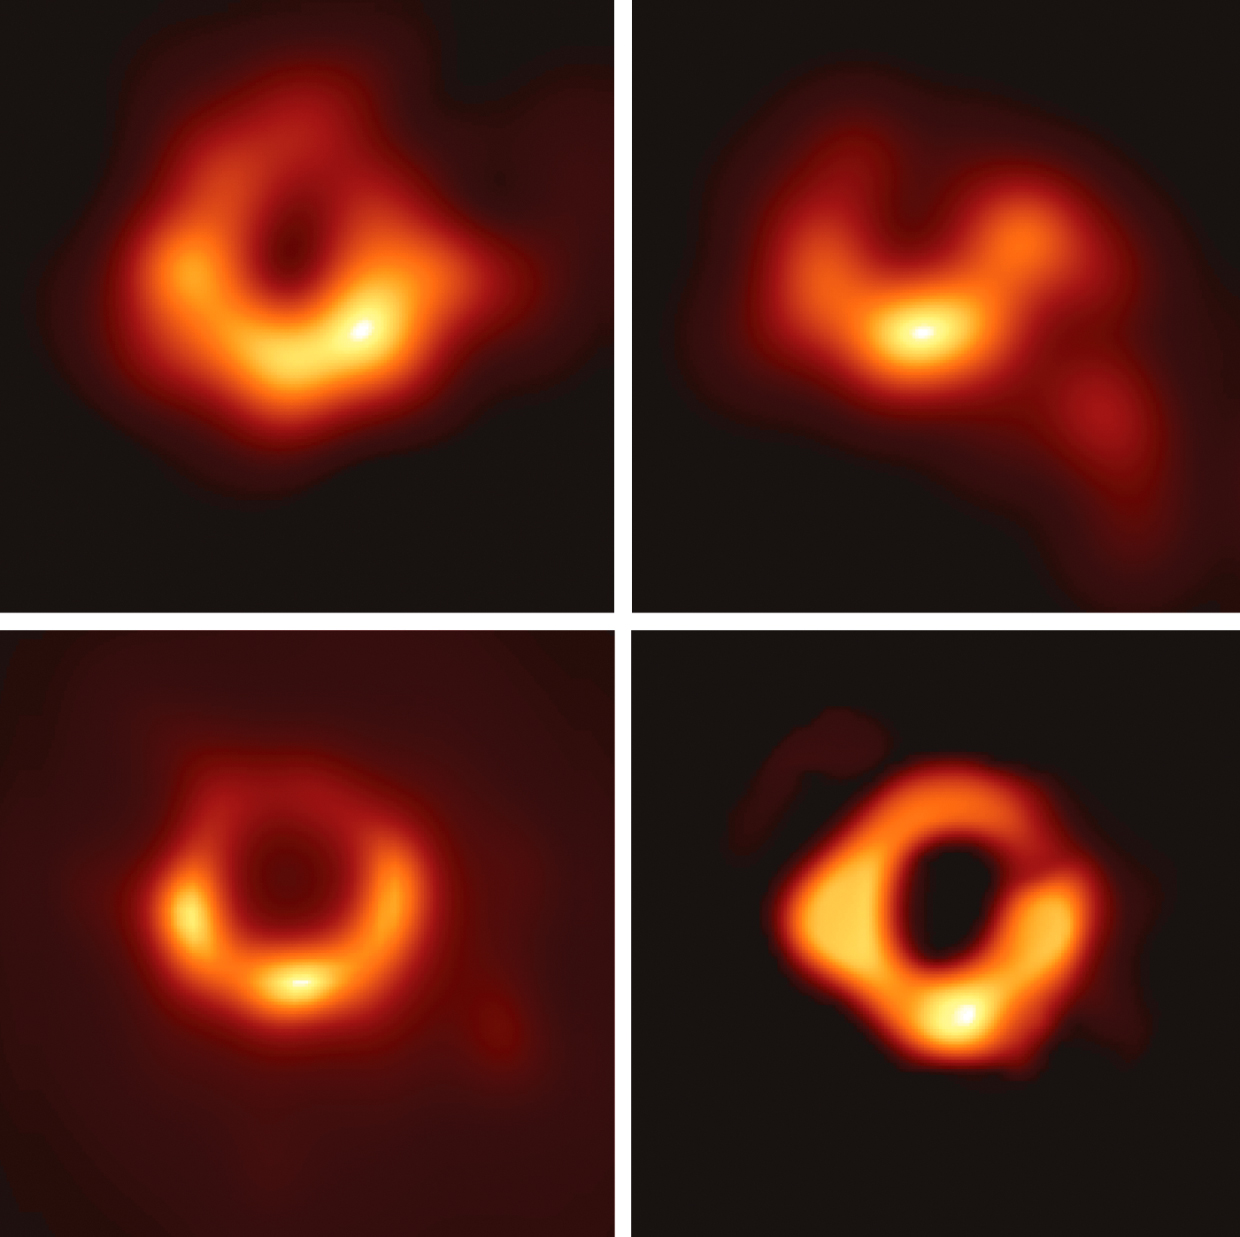 Черная дыра двигается. M87 черная дыра. Чёрная дыра в центре Галактики messier 87 (m 87). Мессье 87 черная дыра. Галактика м87 черная дыра.